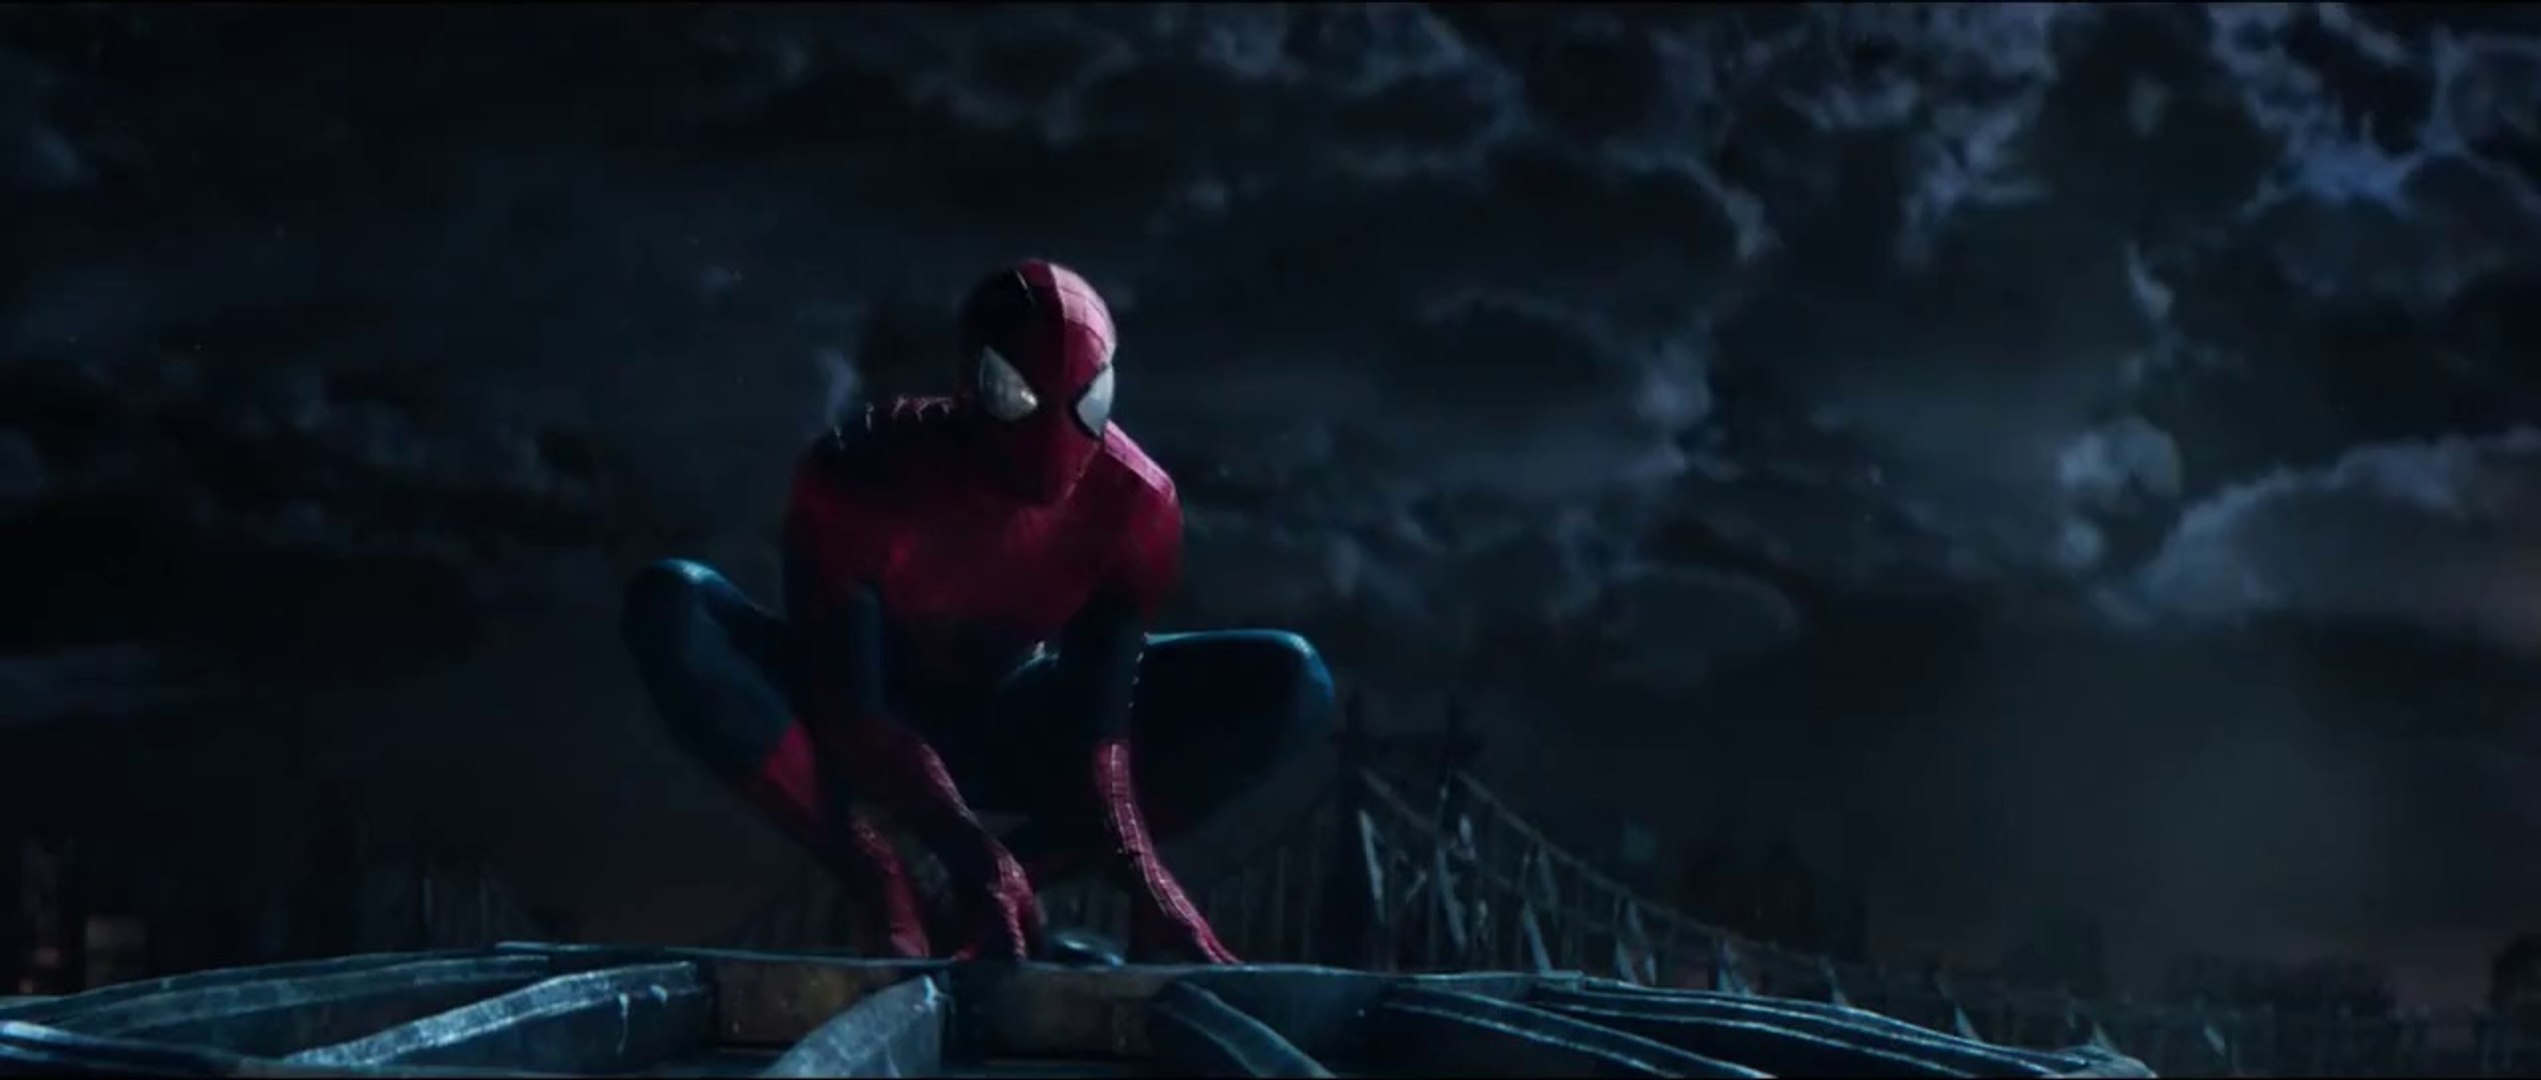 The Amazing Spider-Man 2: El poder de Electro' - Tráiler final en español  (HD) - Vídeo Dailymotion